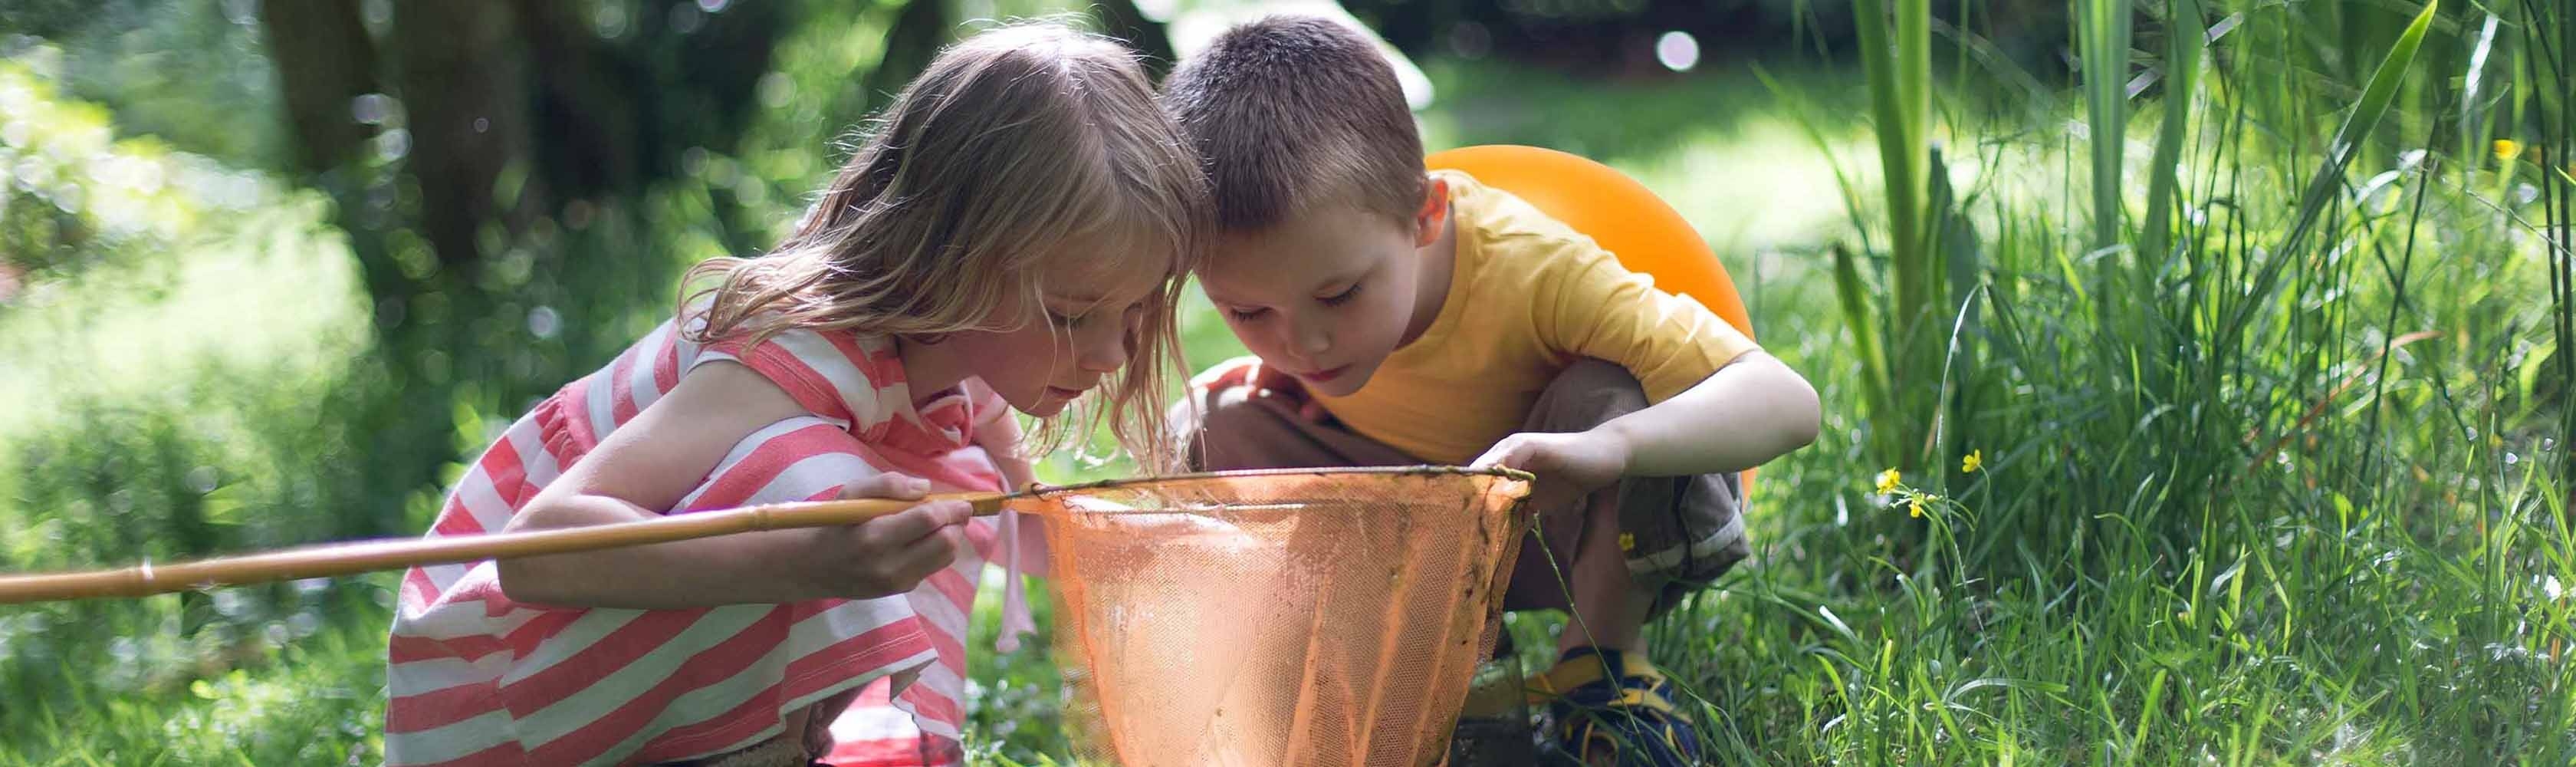 Deux enfants observent des animaux et des plantes dans une épuisette